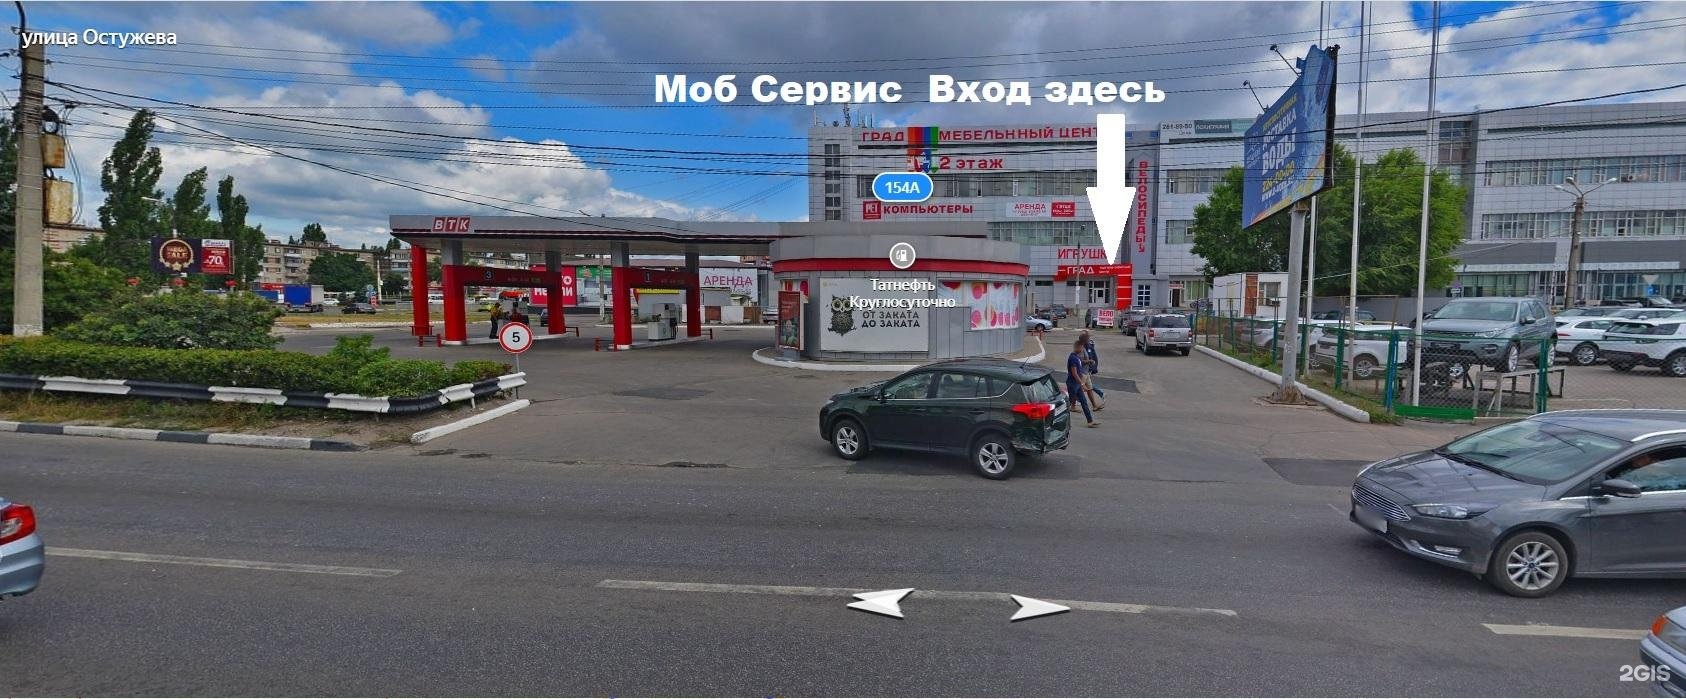 Ленинский проспект 156 Воронеж